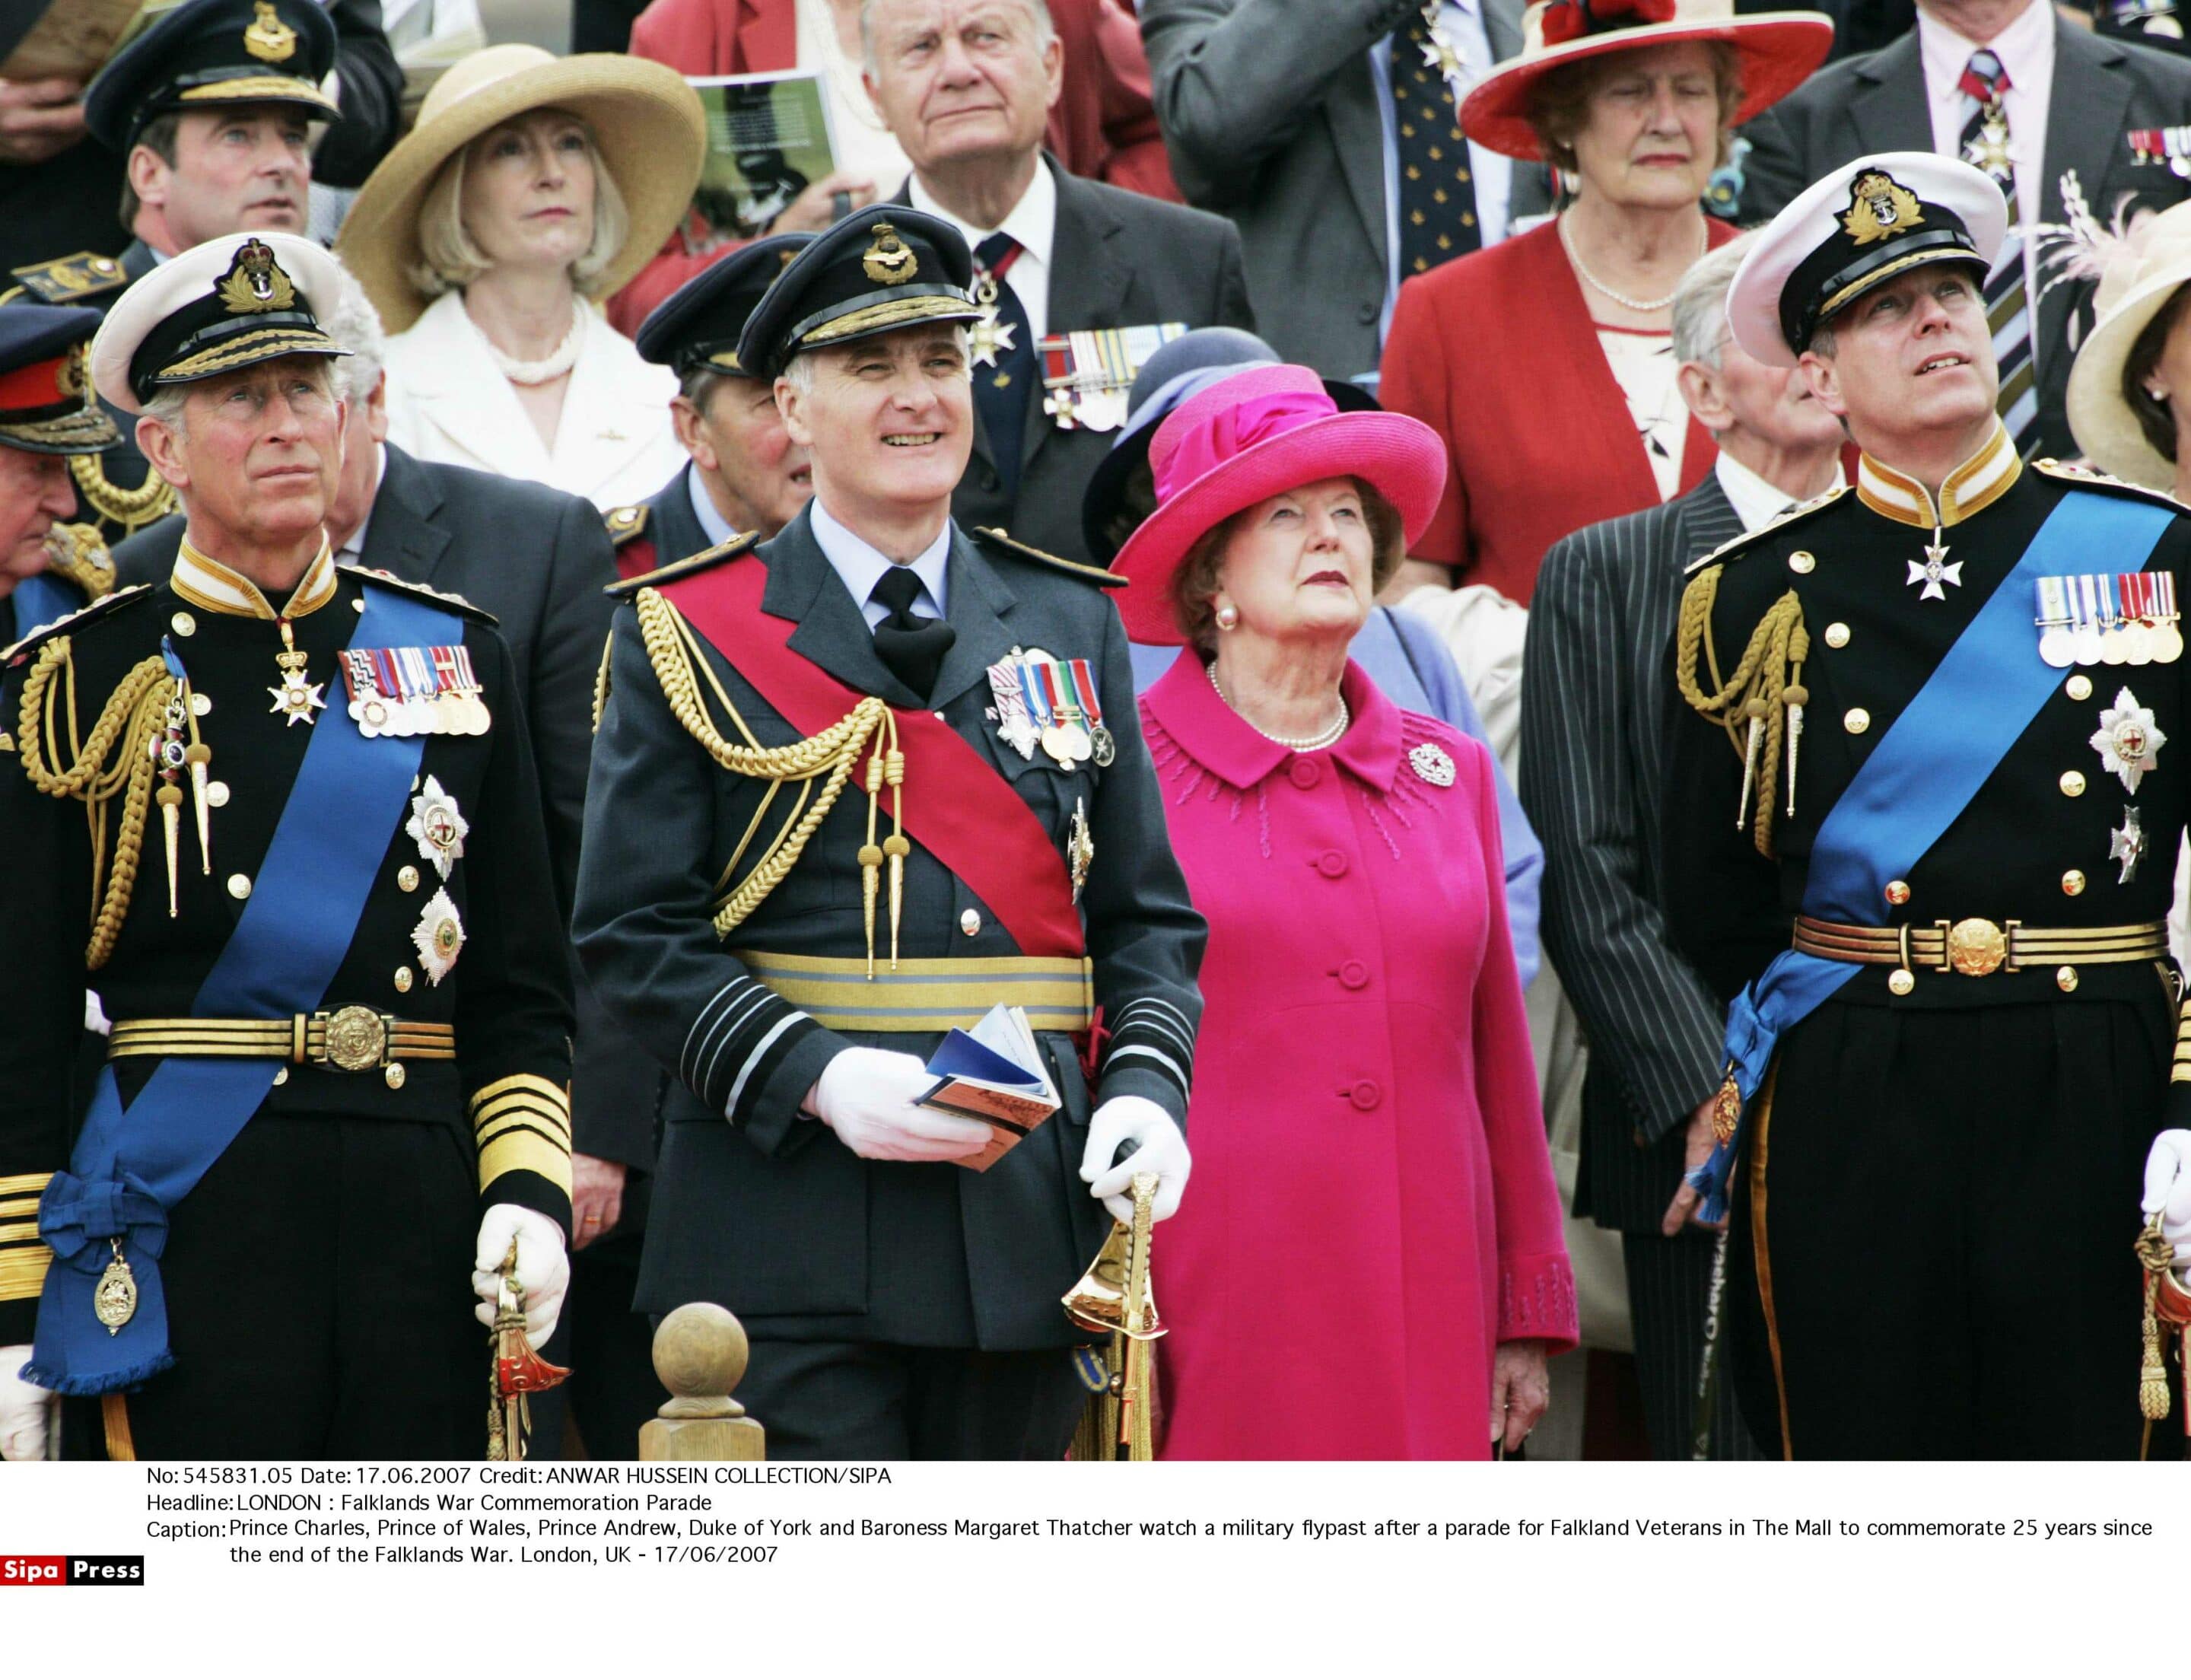 Le Prince Charles, le Prince Andrew et la Baronne Margaret Thatcher regardent un défilé aérien militaire après un défilé pour les vétérans des Malouines dans le Mall pour commémorer les 25 ans de la fin de la guerre des Malouines. Londres, Royaume-Uni - 17/06/2007
Crédits: Sipa